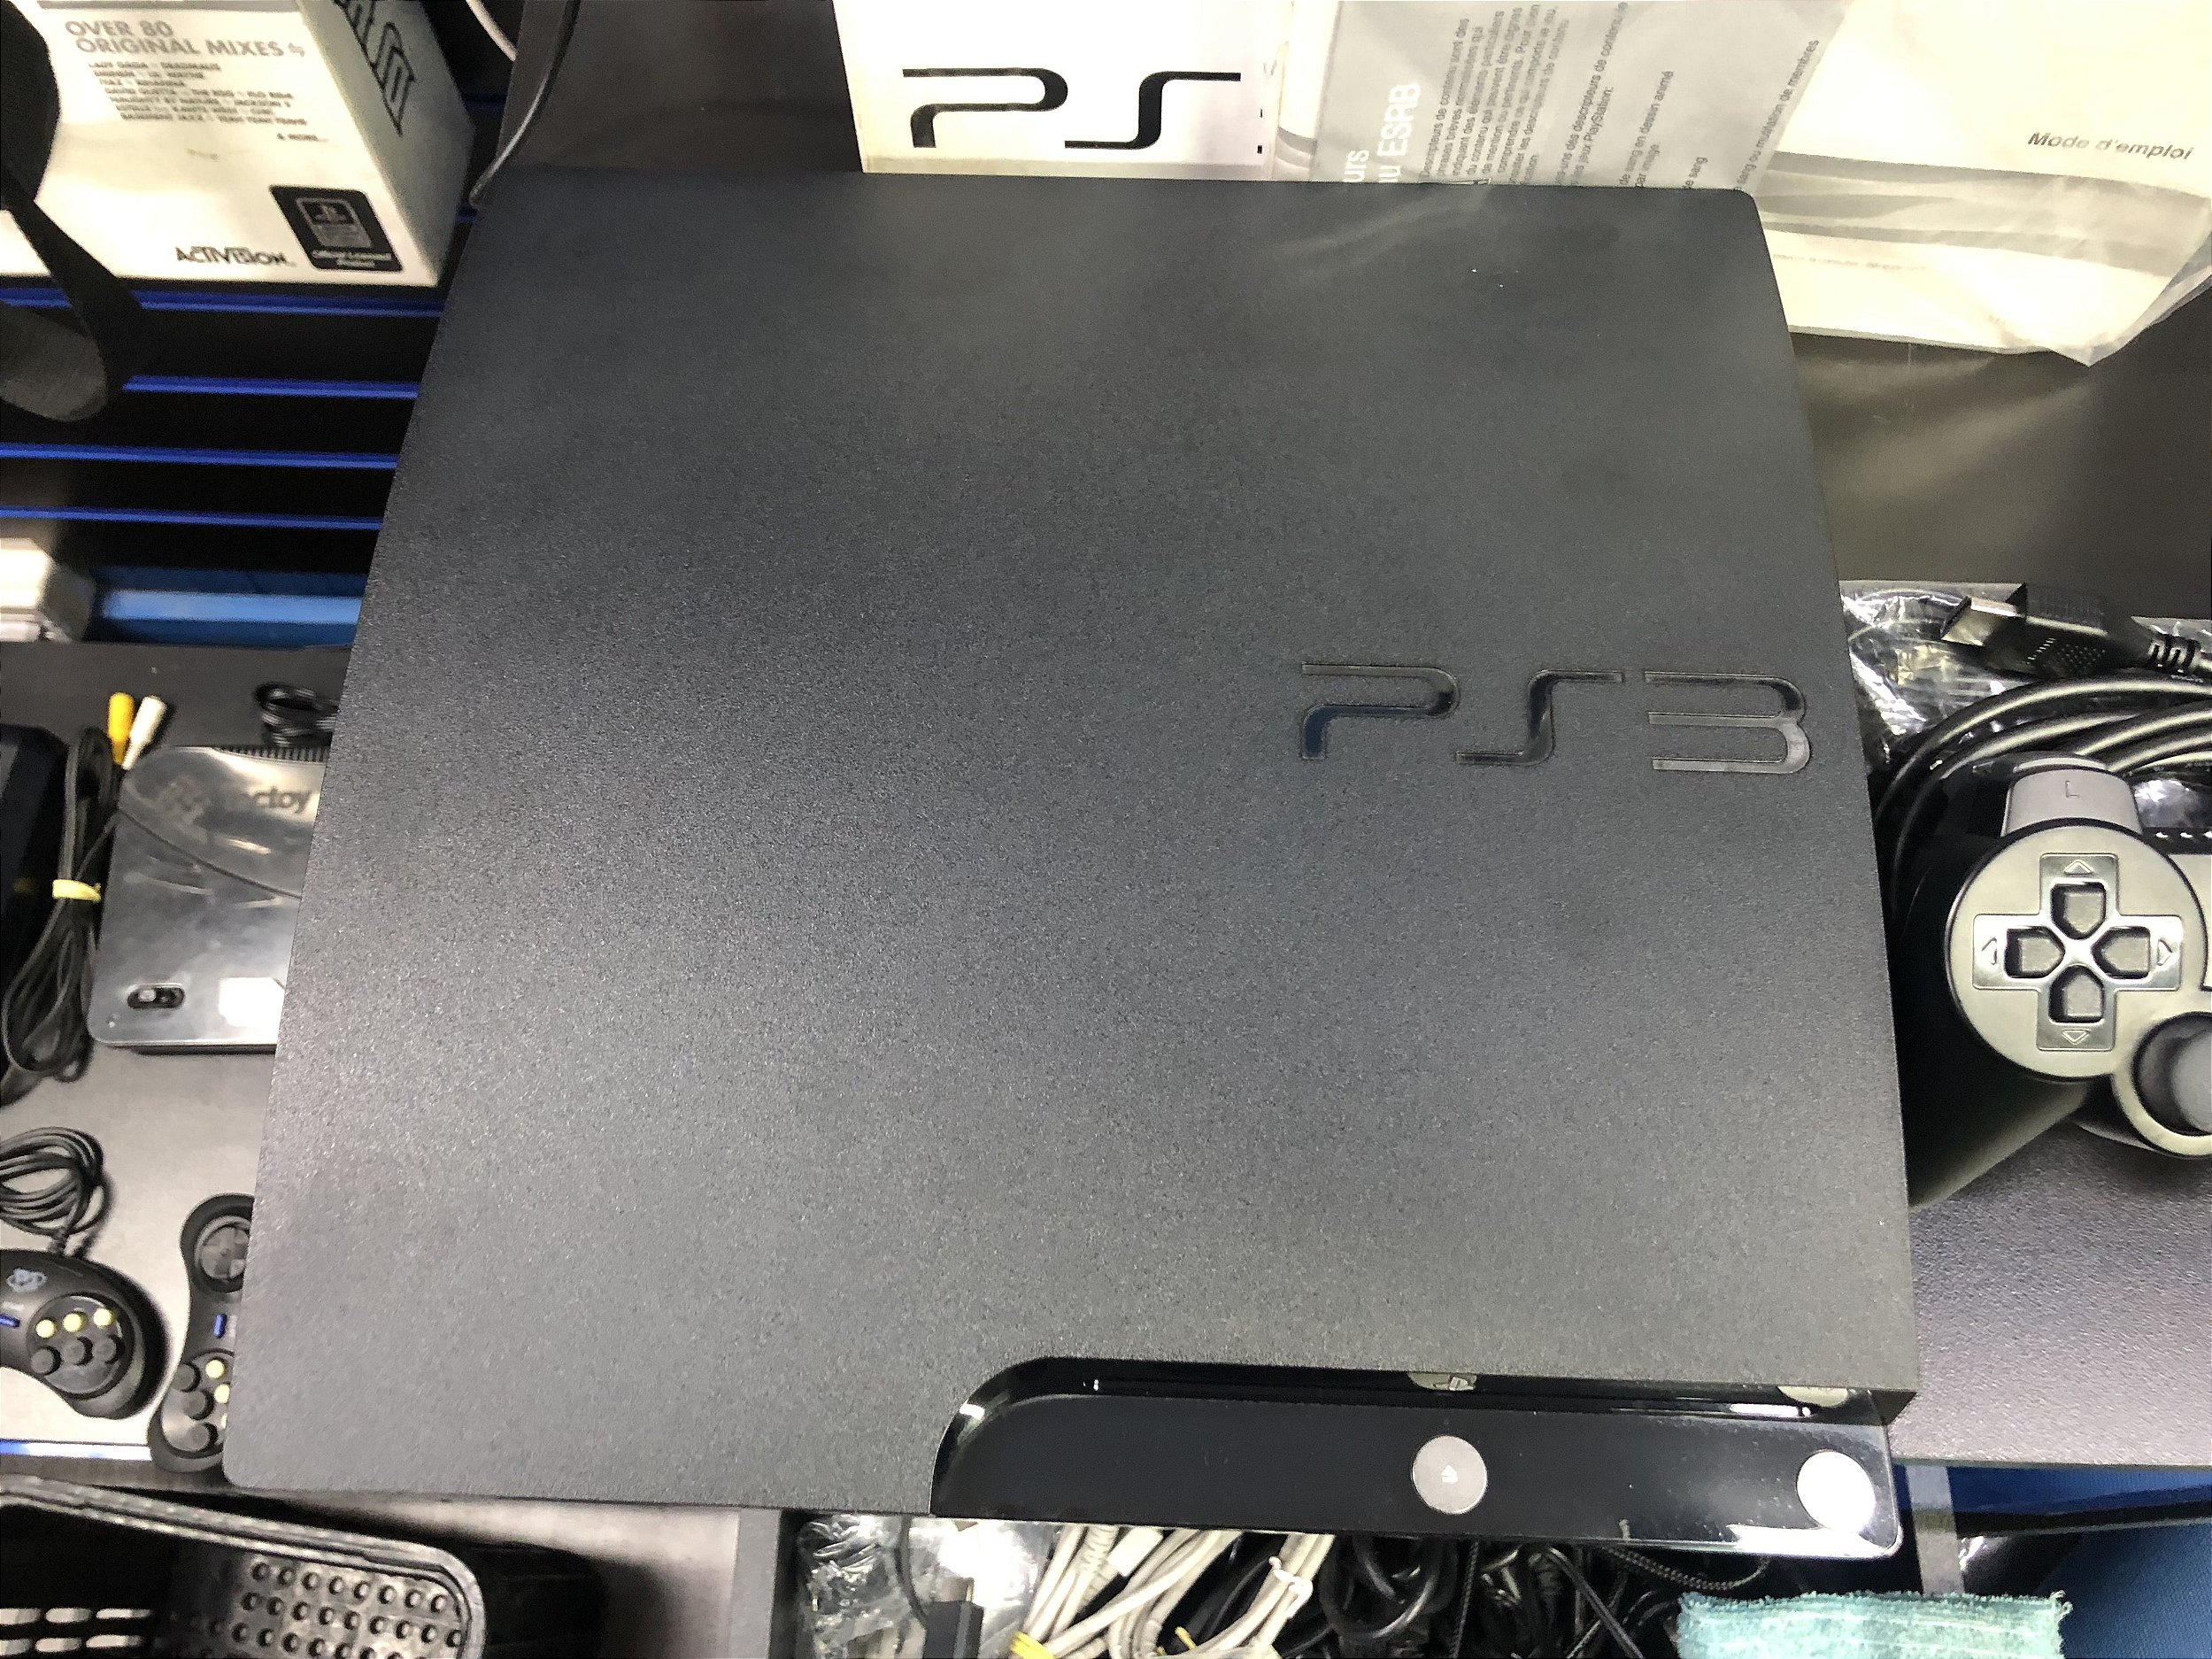 Ps3 Playstation 3 Super Slim 80 Jogos Originais